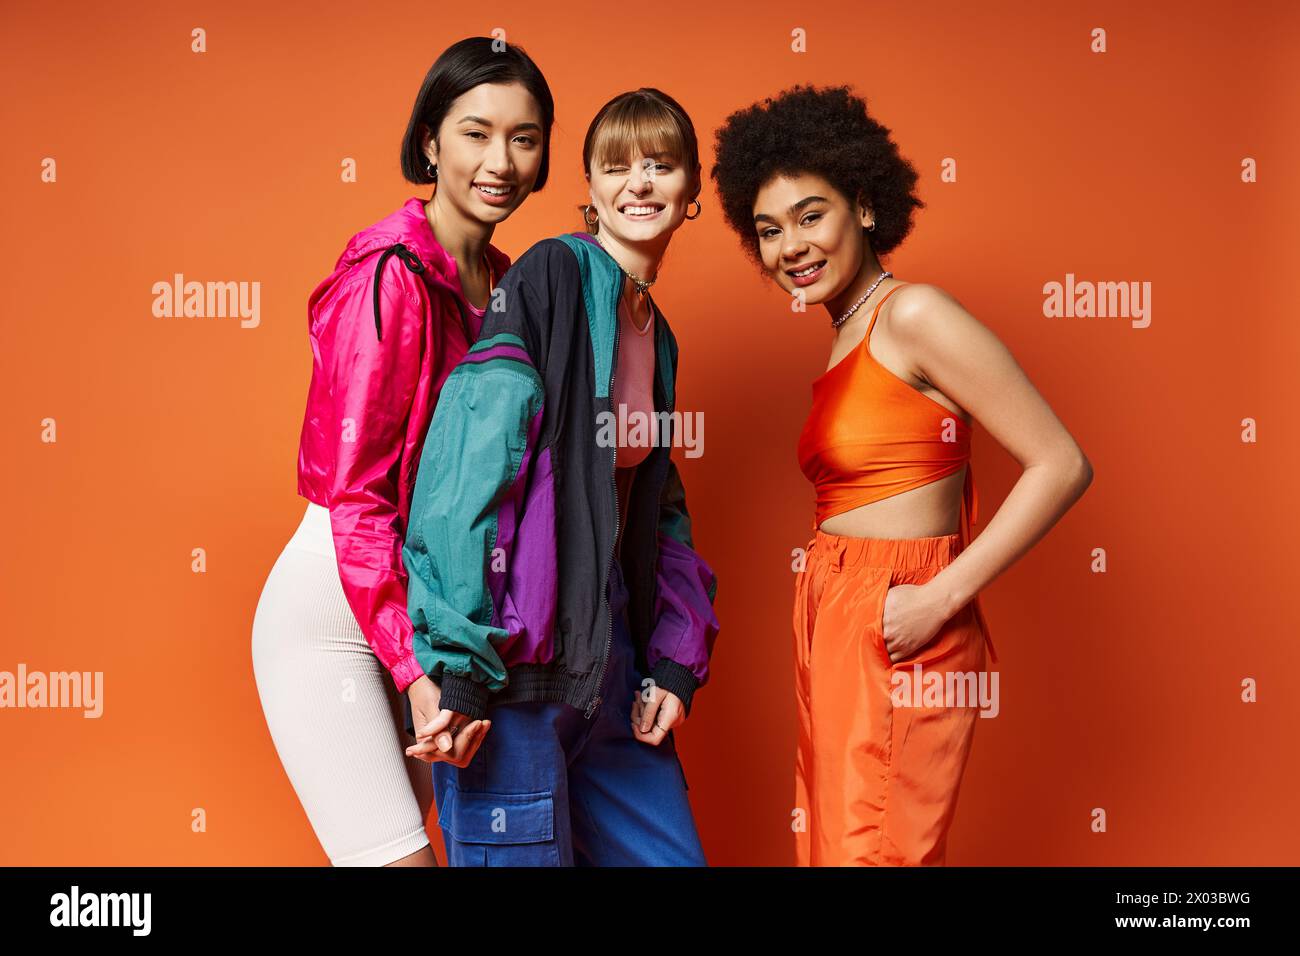 Trois femmes d'ethnies différentes debout ensemble dans un studio sur un fond orange, rayonnant de beauté et d'unité. Banque D'Images